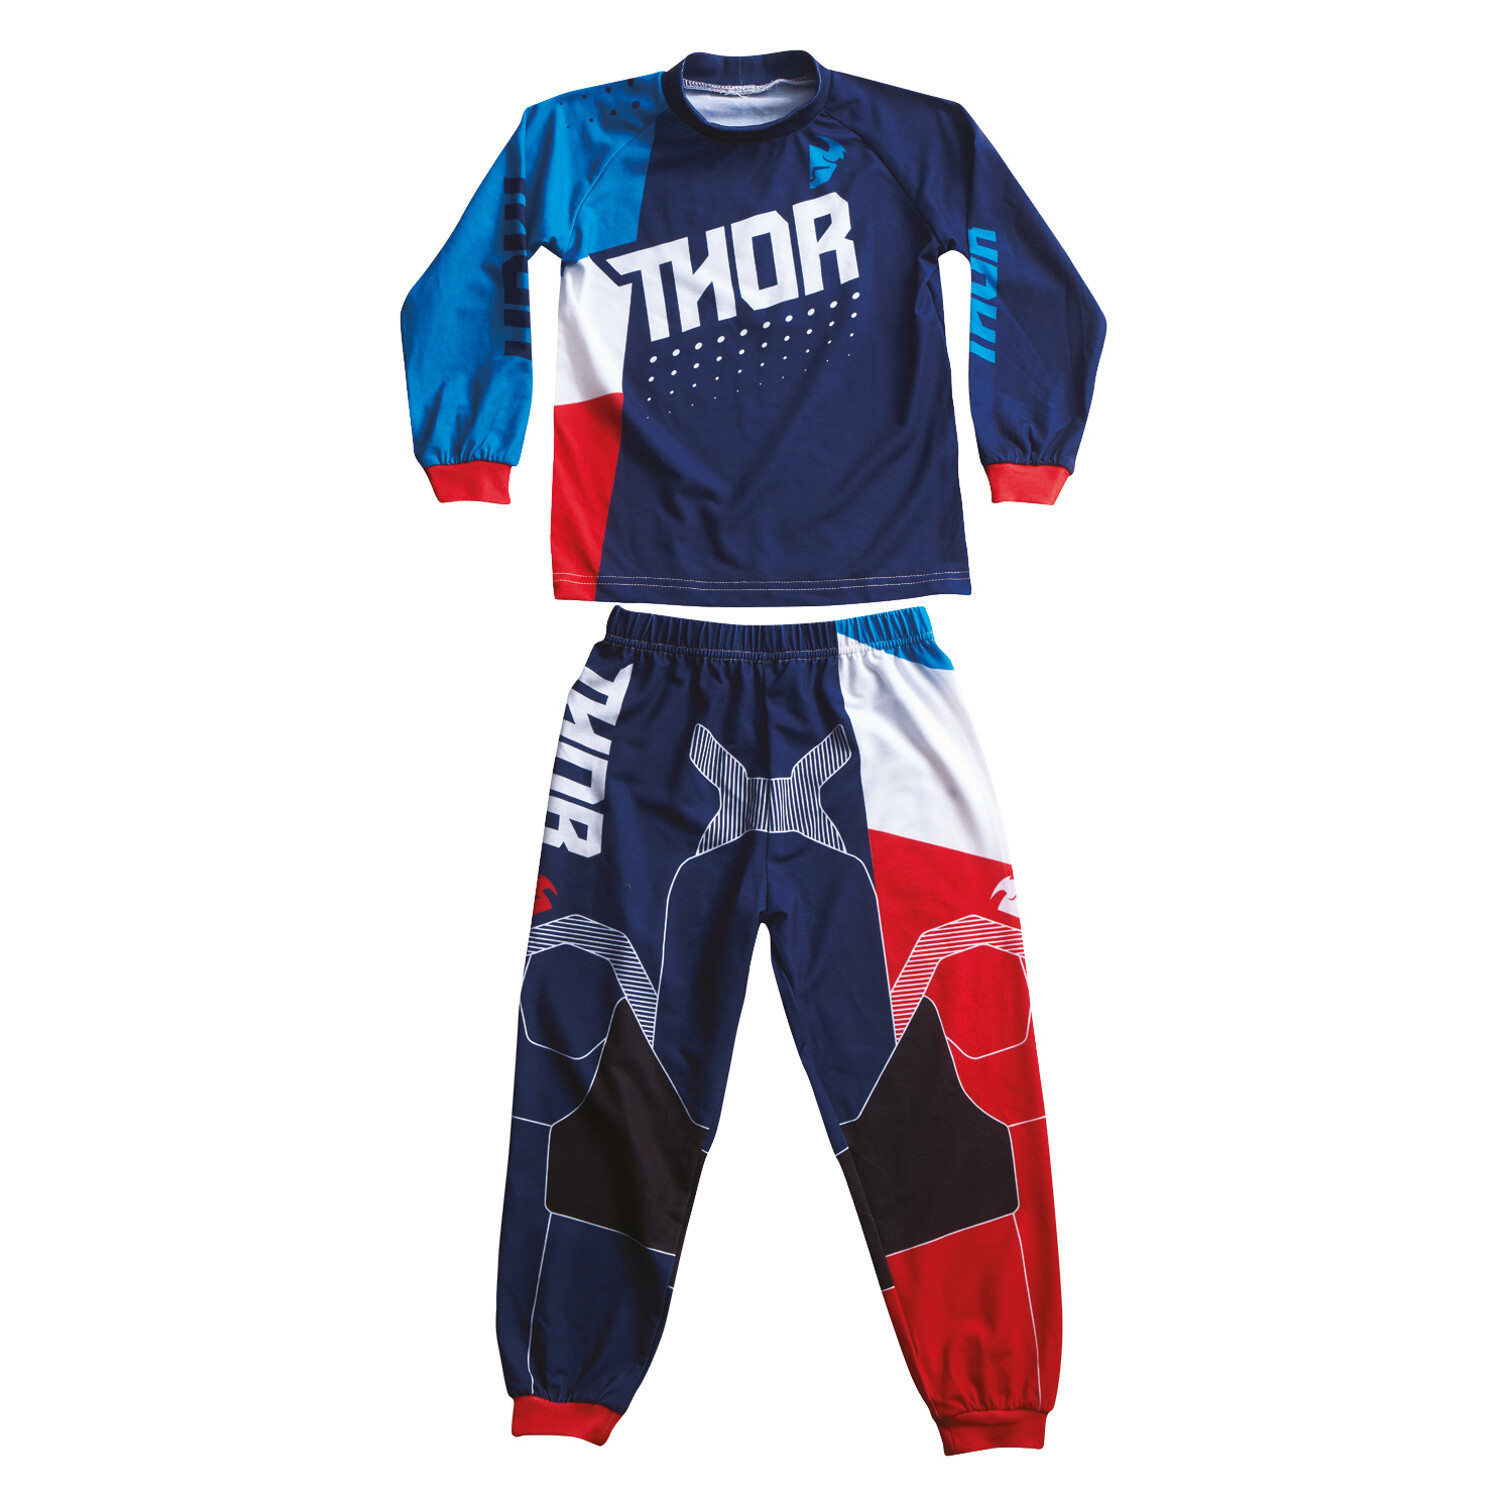 Thor Junior Pyjama Pajamas Blau/Rot